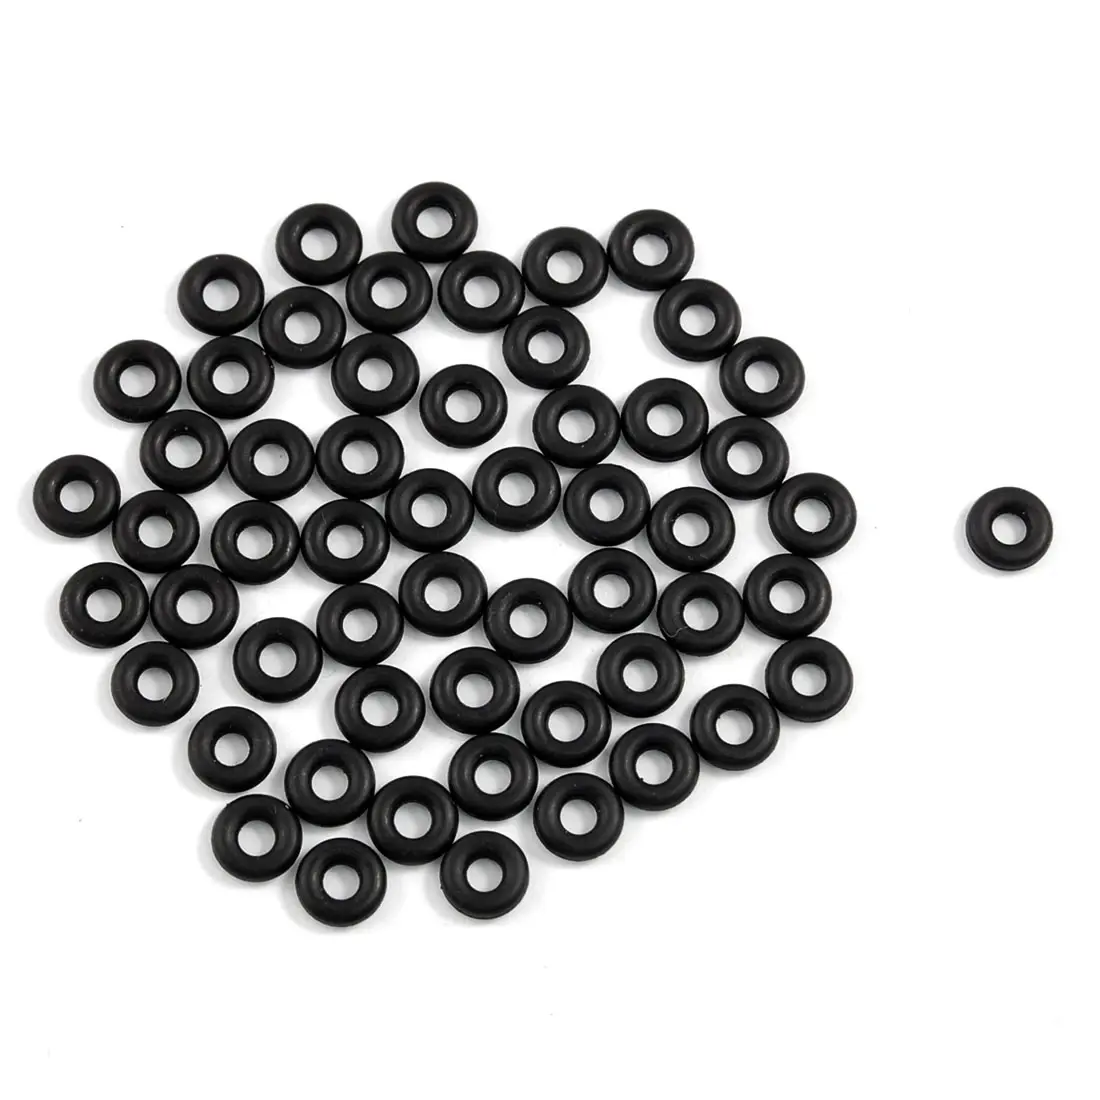 Siyah renk silikon kauçuk o'ring üreticisi